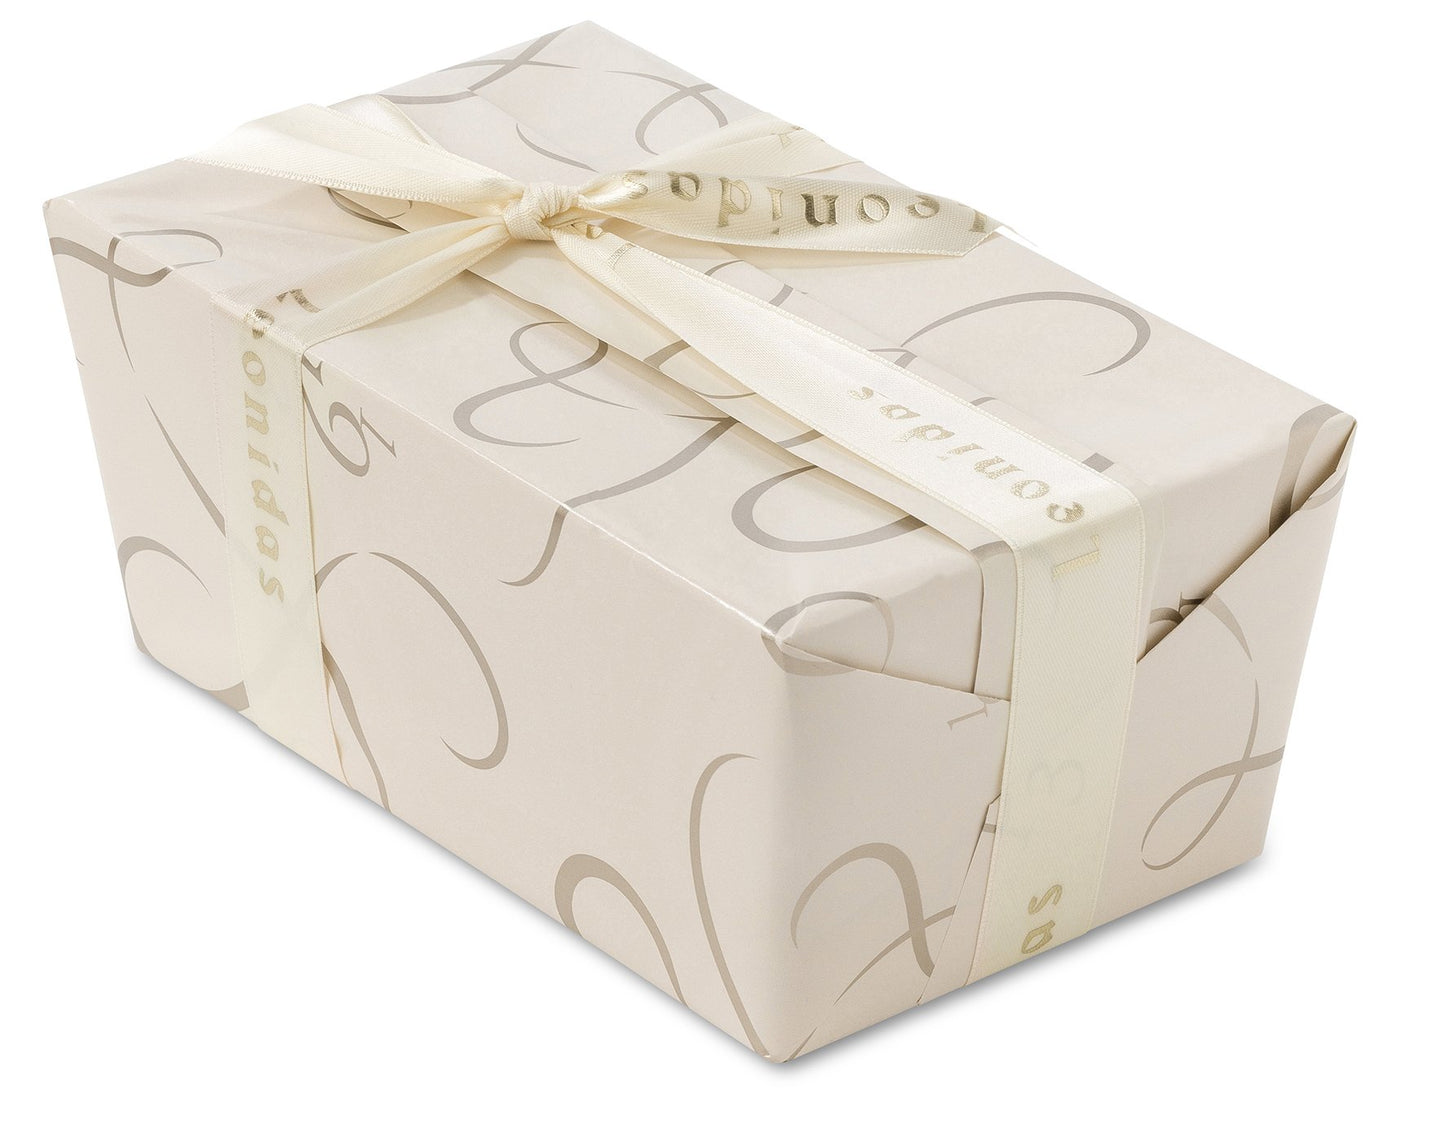 
                  
                    DARK Chocolates Ballotin Box by weight - leonidasbrighton.co.uk - Leonidas Brighton
                  
                